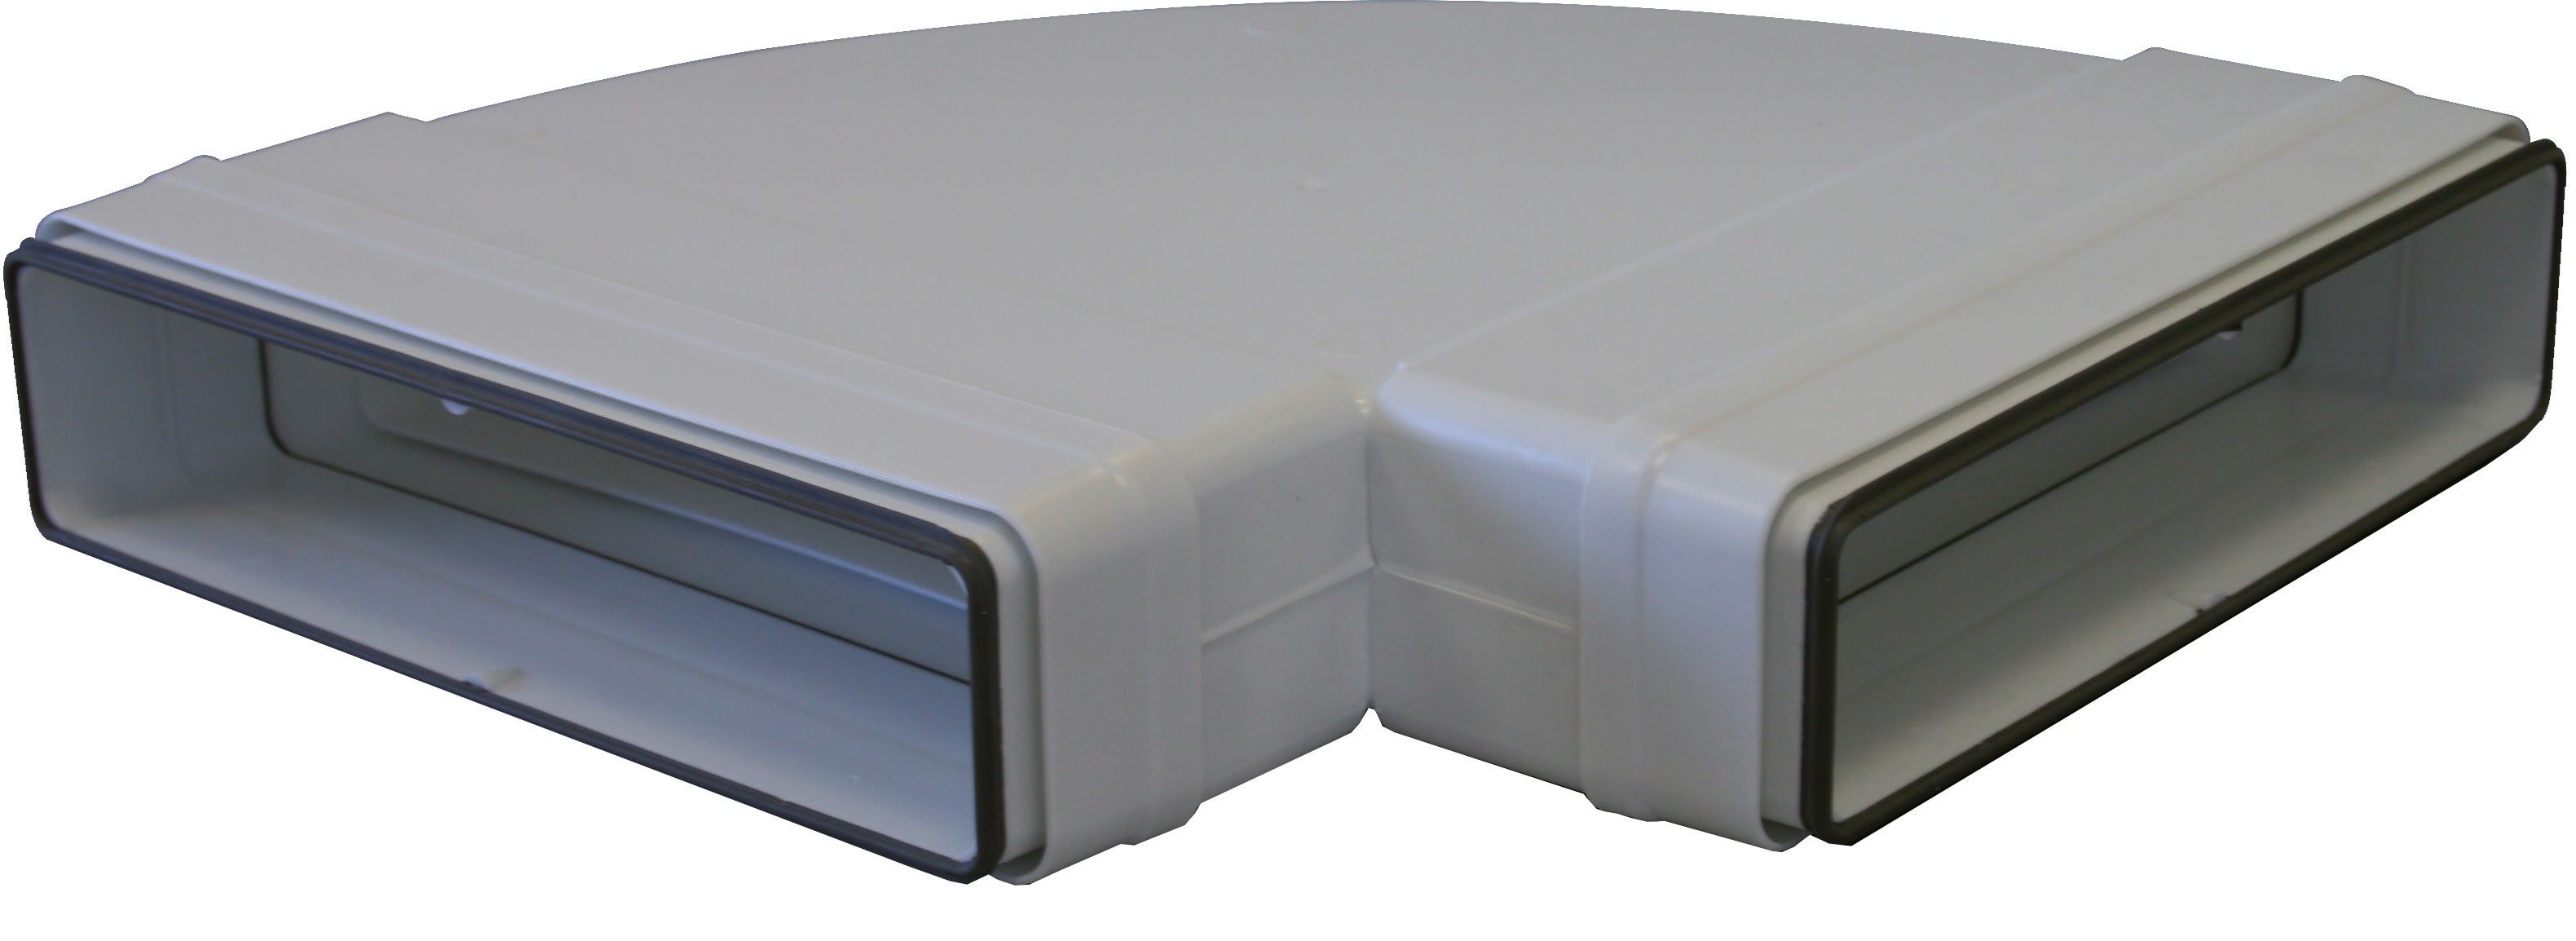 S&P - Coude 90° horizontal PVC rigide à joints d'étanchéité, rectangulaire 40 x 110 mm